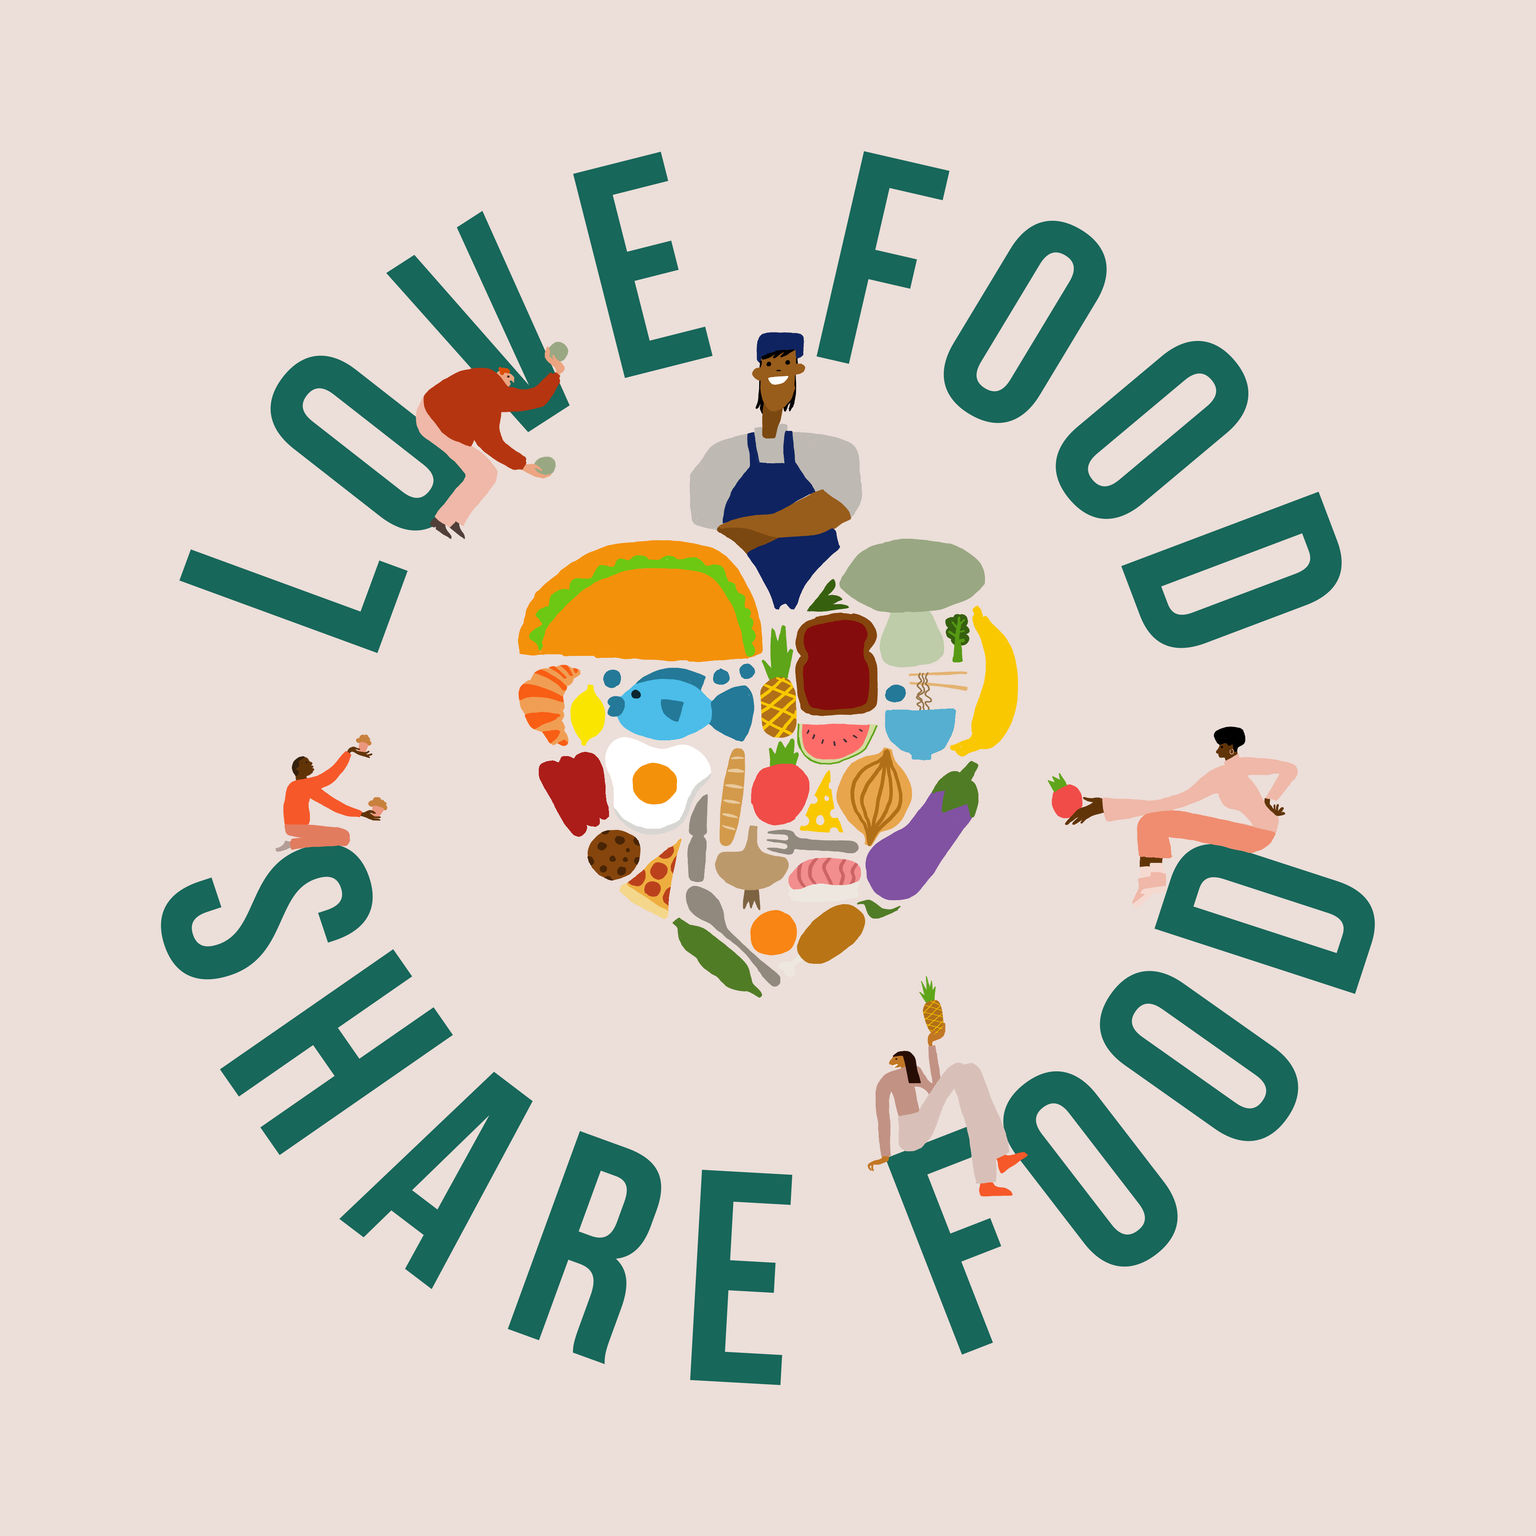 Love Food Share Food
